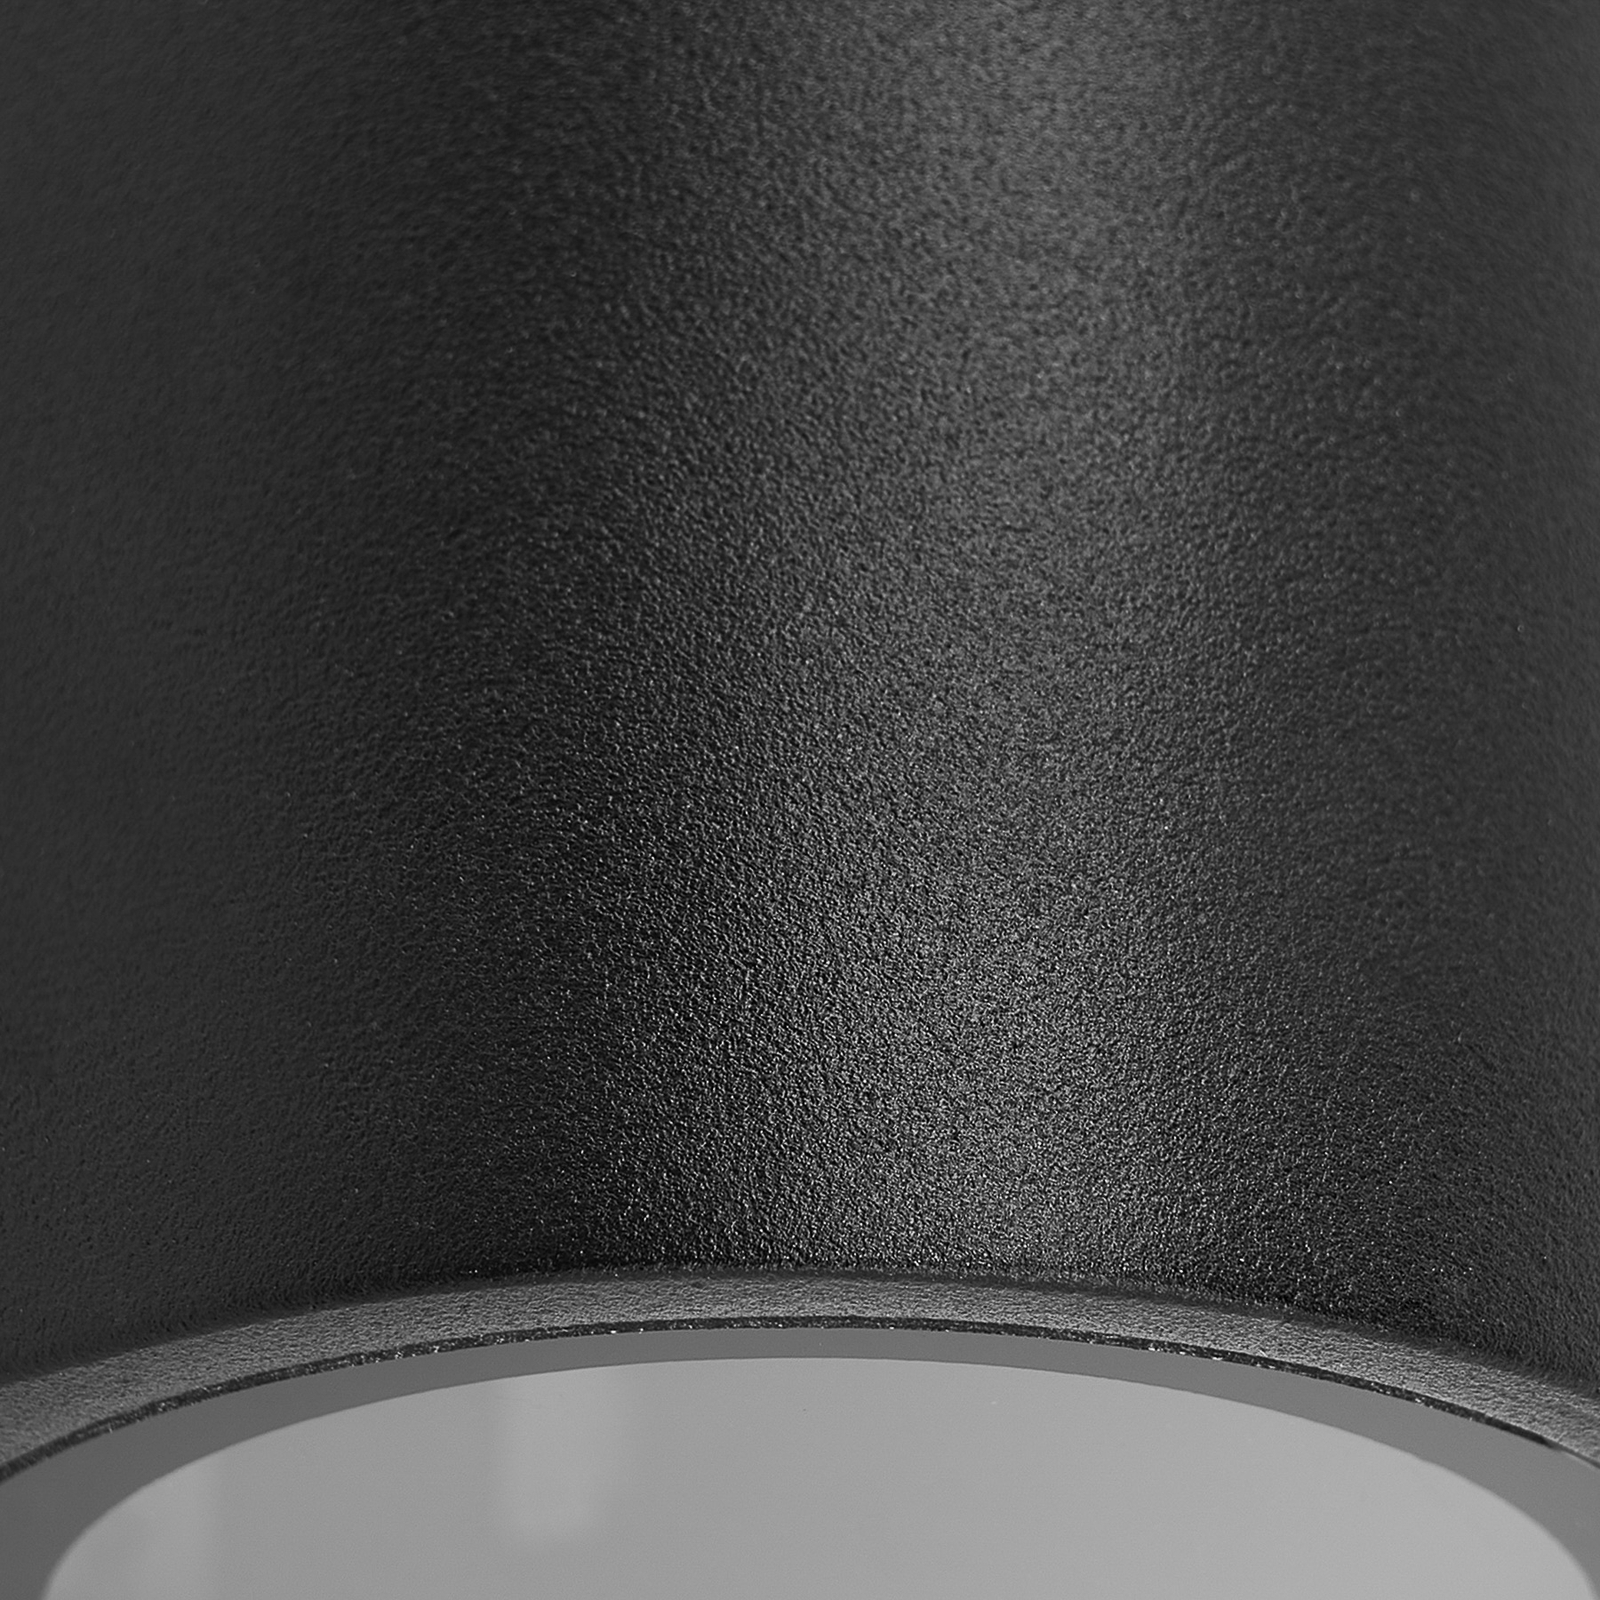 Prios kültéri fali lámpa Tetje, fekete, kerek, 10 cm, 4 darabos szett